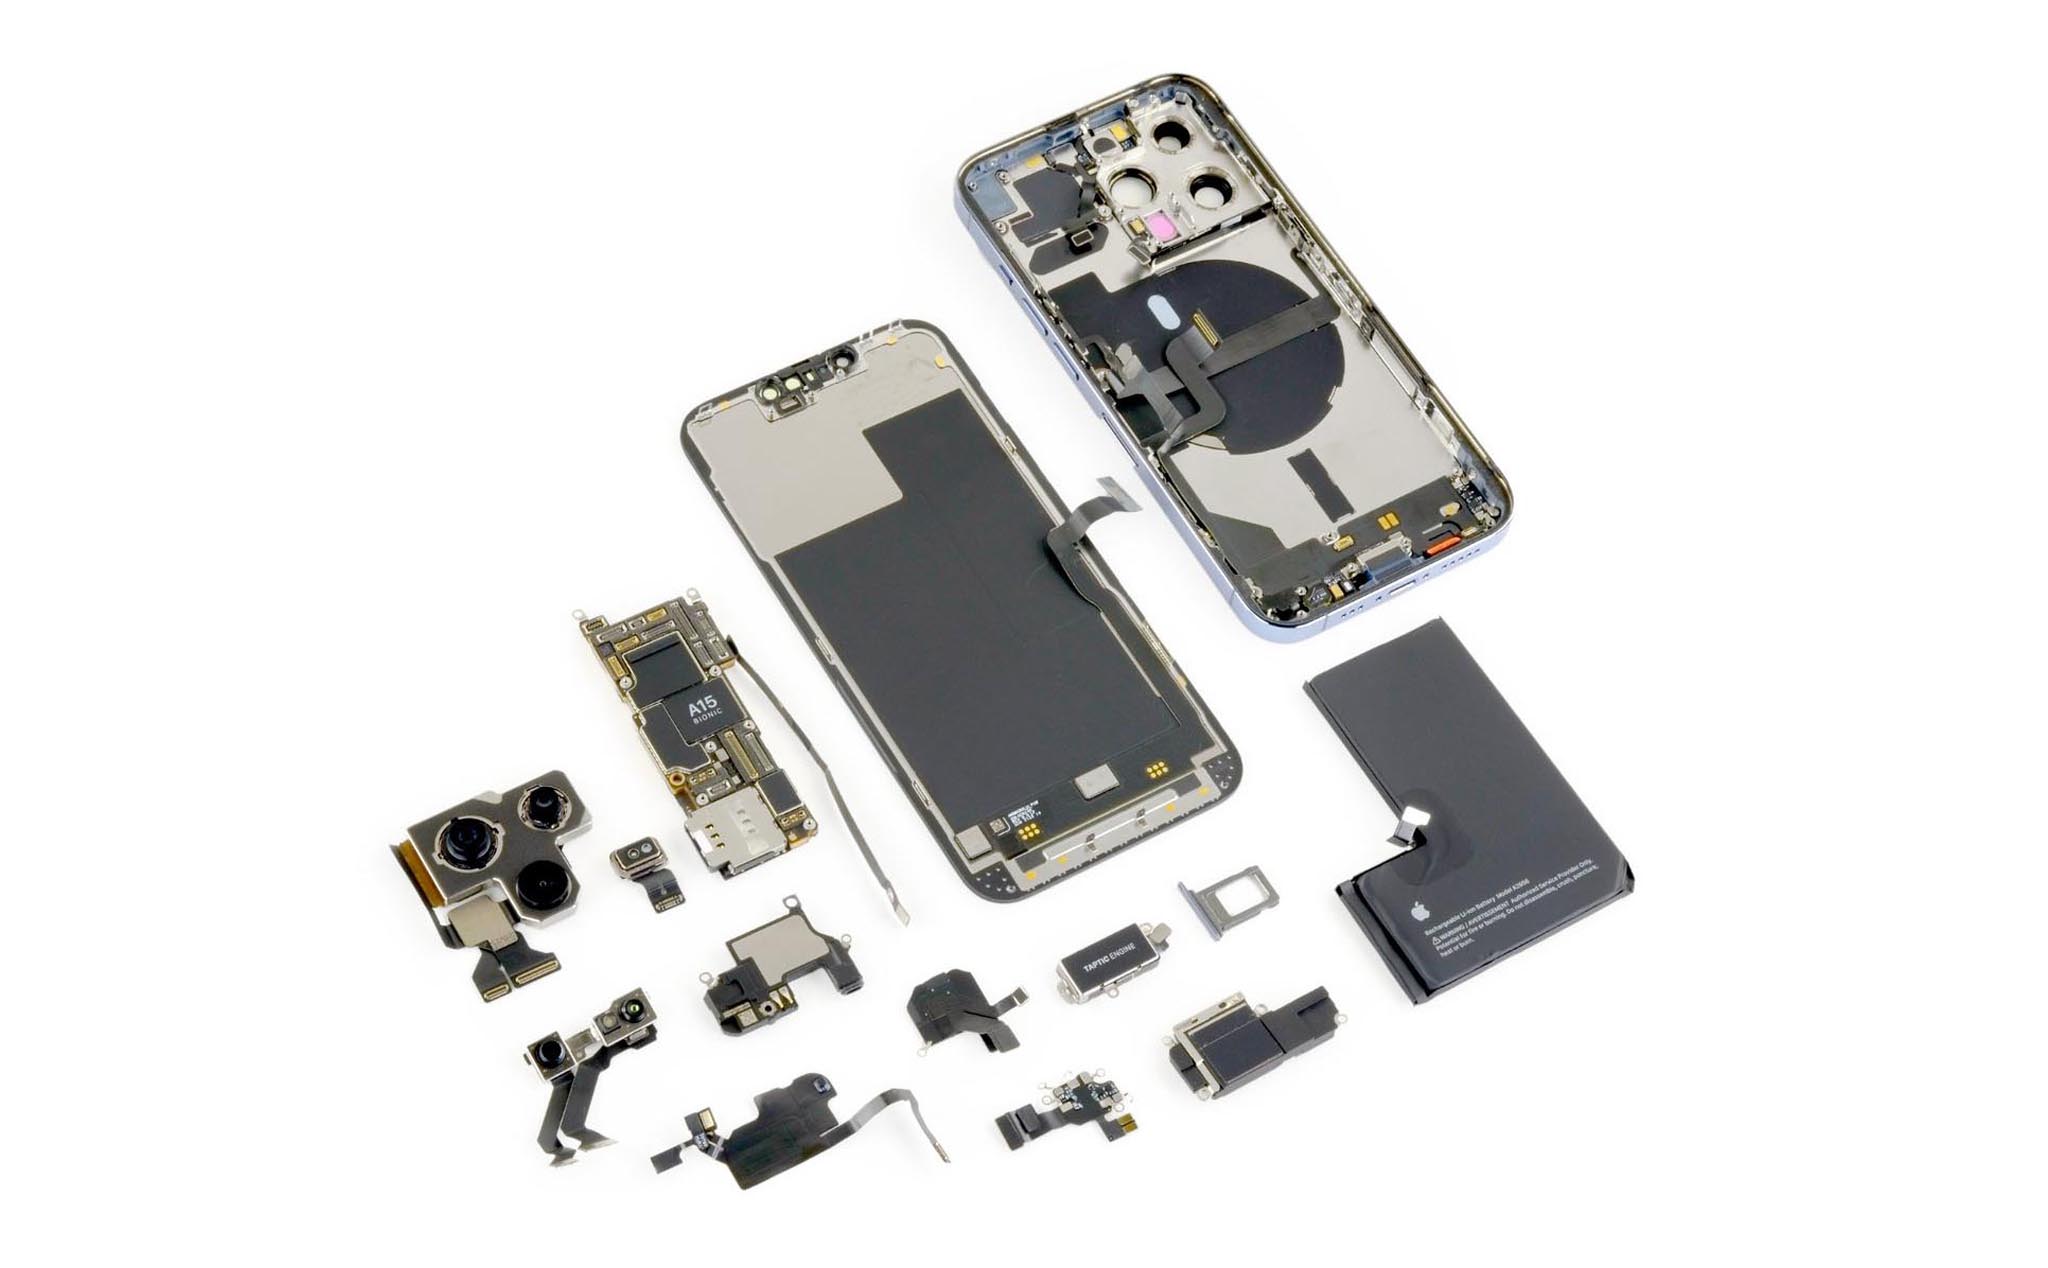 Tech Insights: Chi phí sản xuất của một chiếc iPhone 13 Pro là 570 USD, cao hơn 12 Pro và S21 Plus